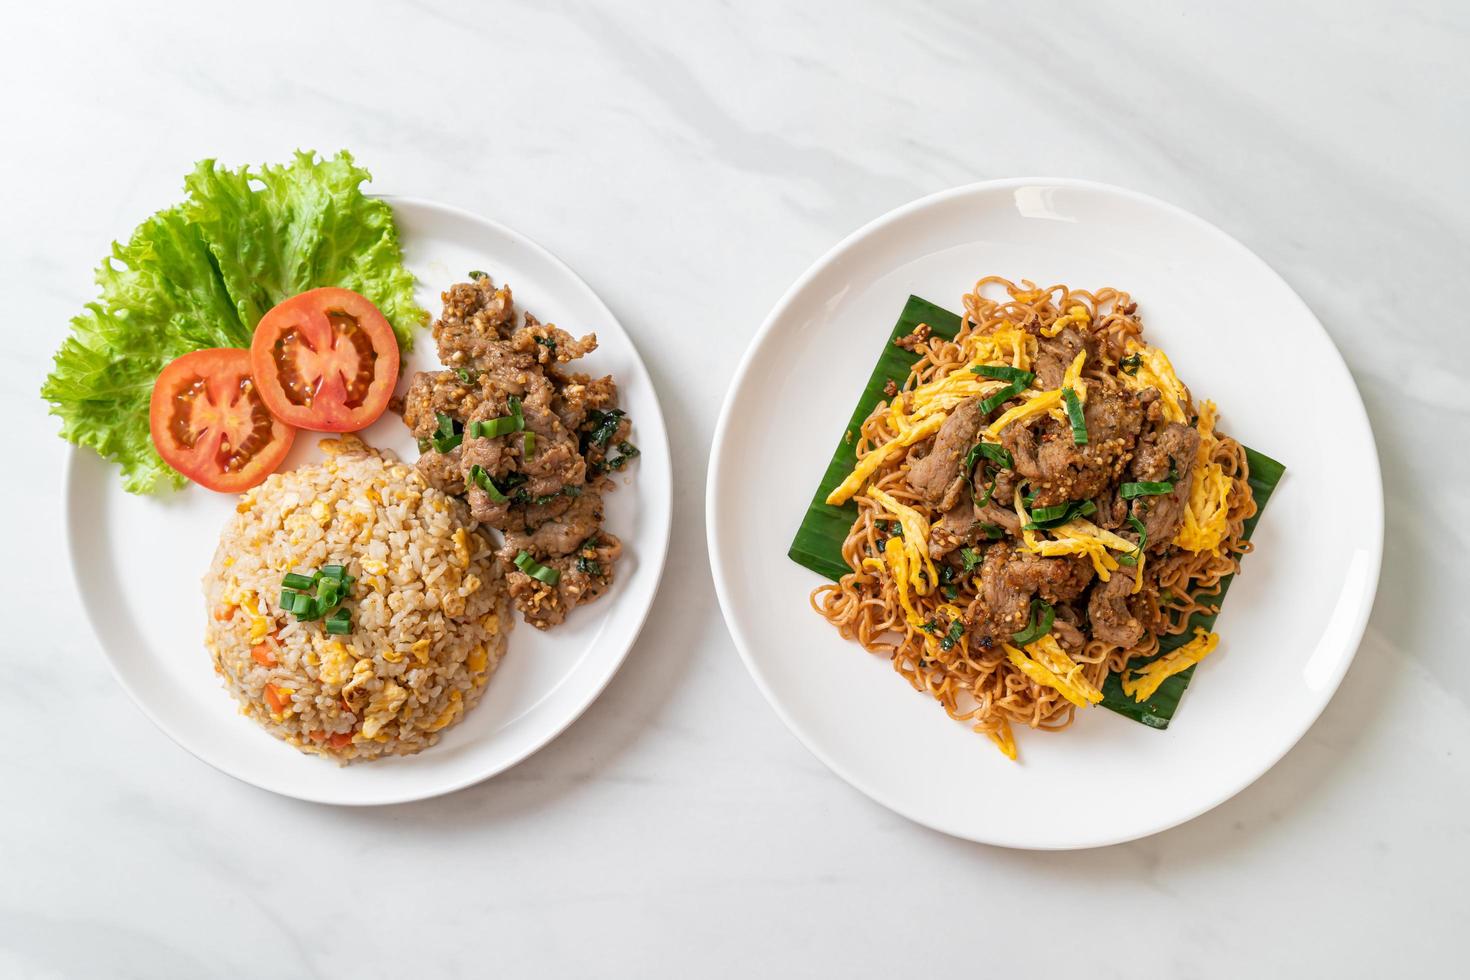 arroz frito com carne de porco grelhada e macarrão instantâneo frito com carne de porco - comida asiática foto